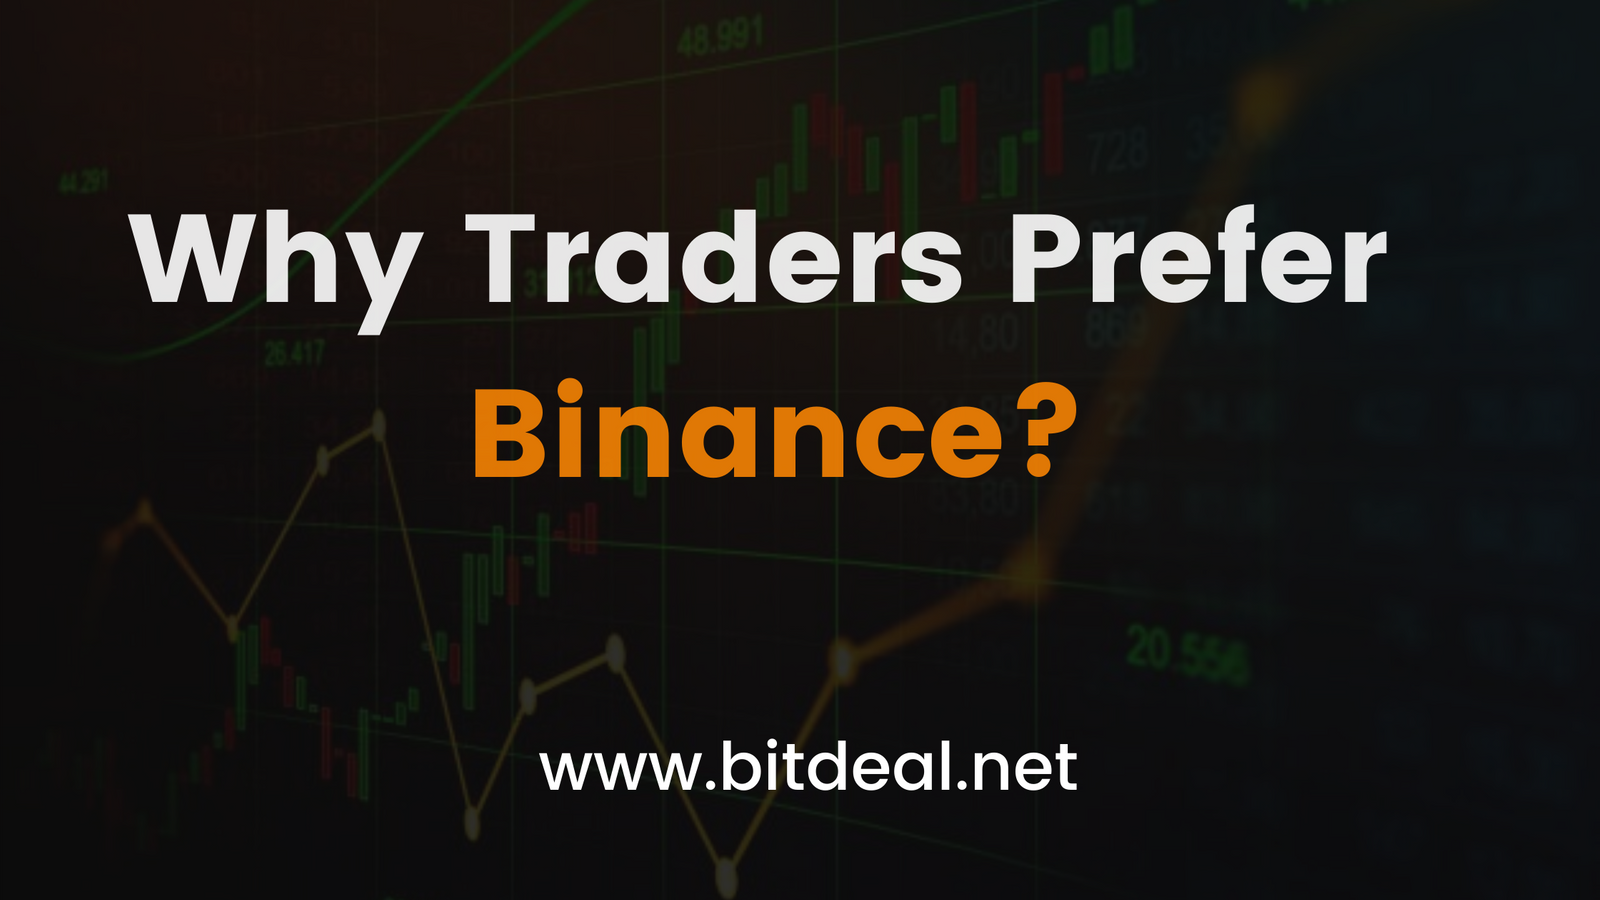 Is Binance Traders favorite site?